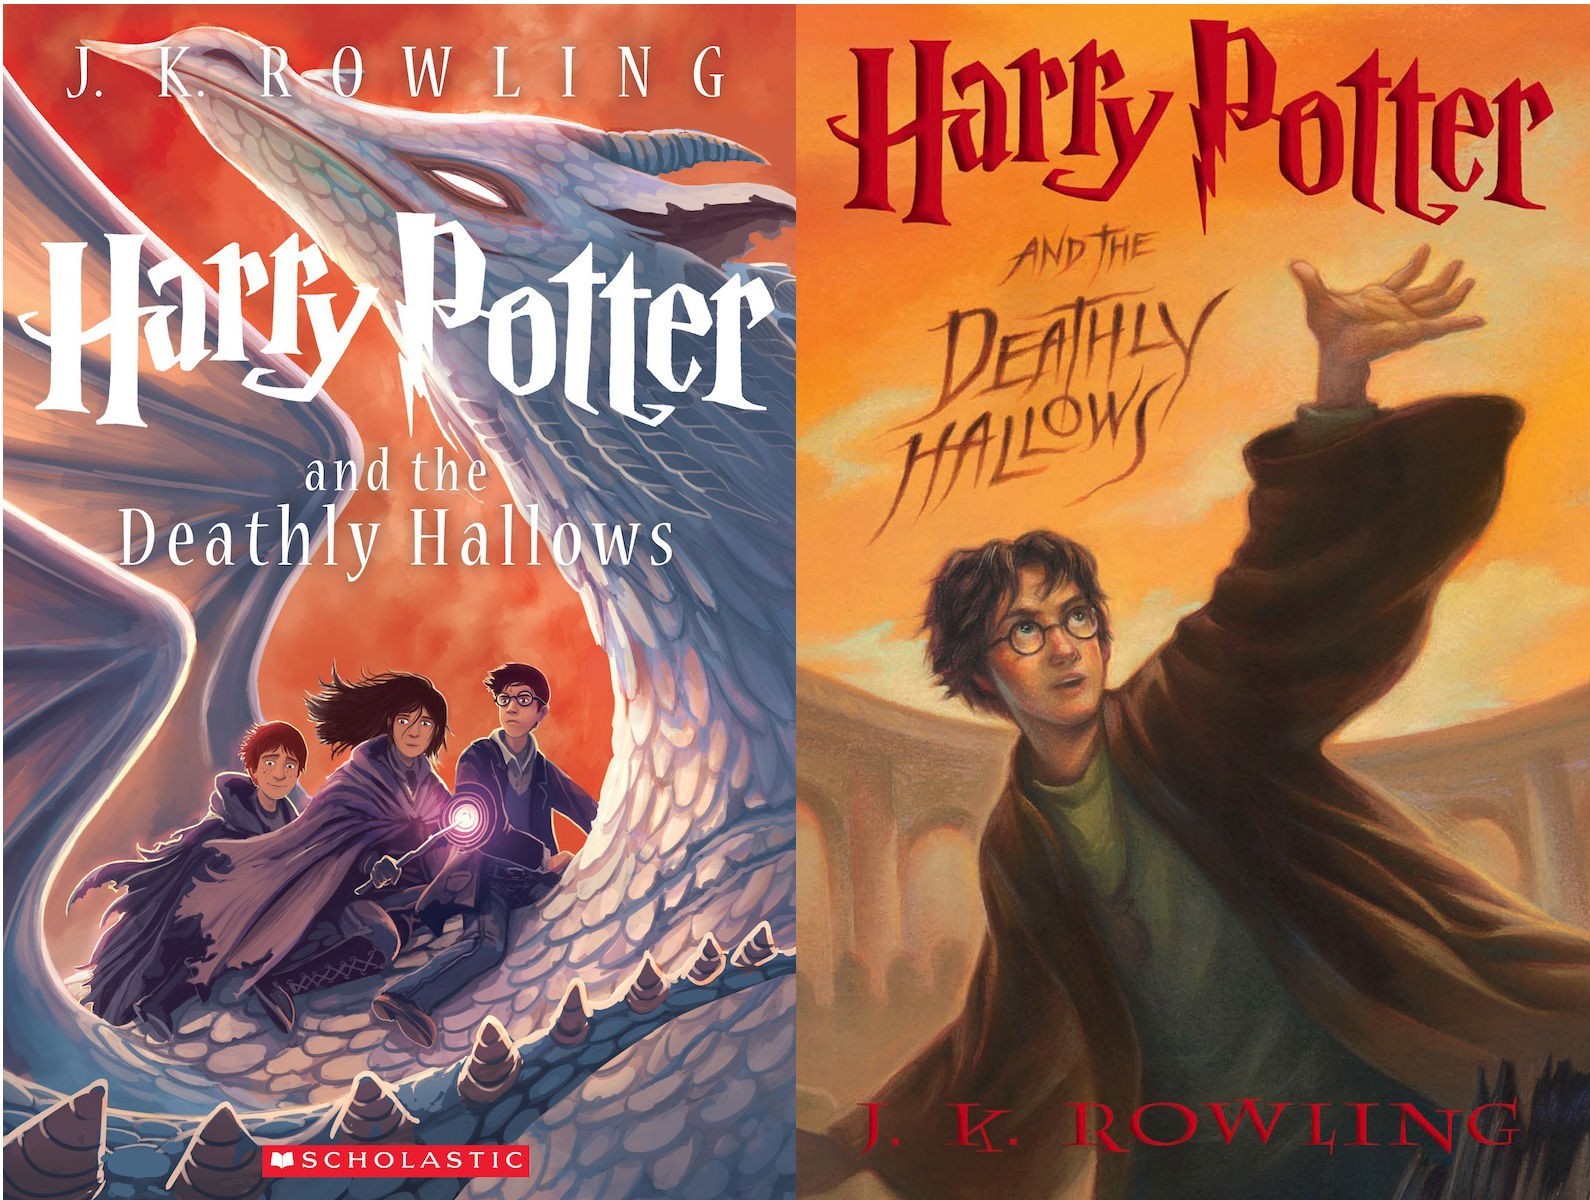 Sacerdote prohíbe libros de “Harry Potter” en escuela de EE.UU. por consejo de exorcistas